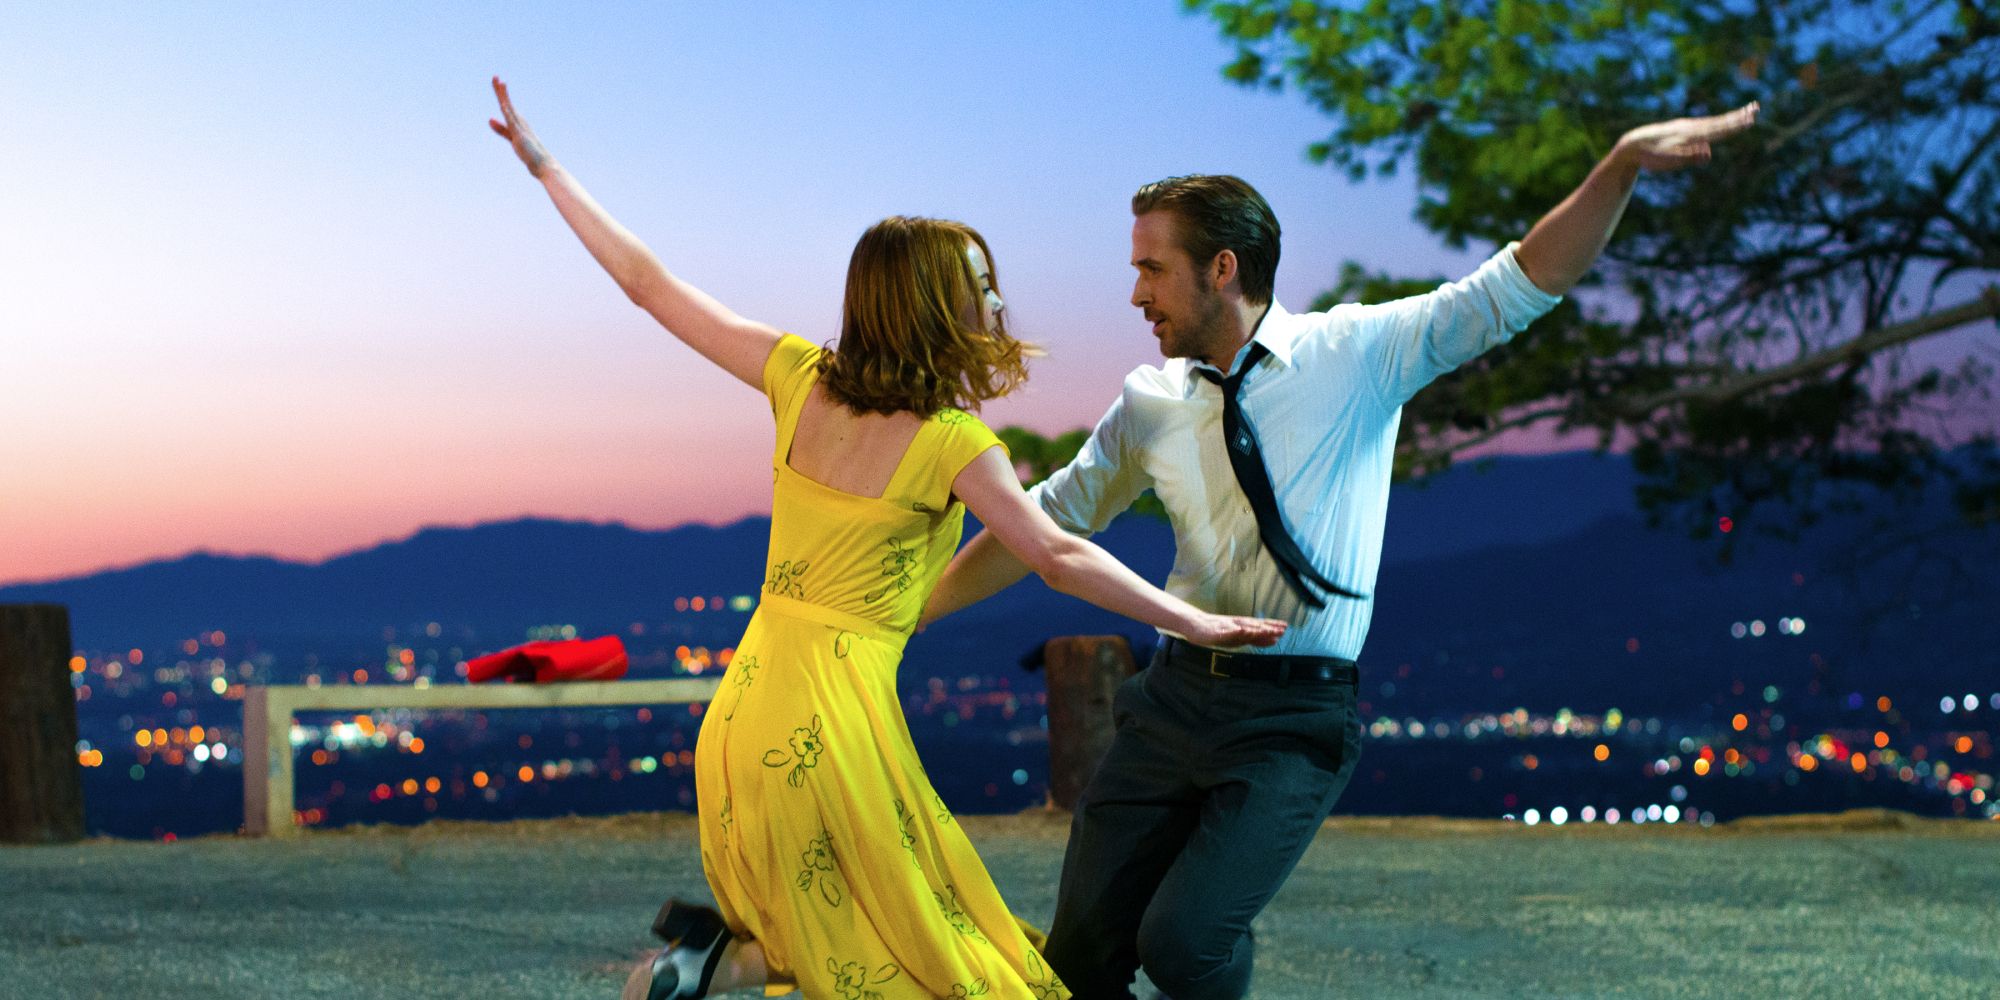 إيما ستون وريان جوسلينج يرقصان معًا في La La Land